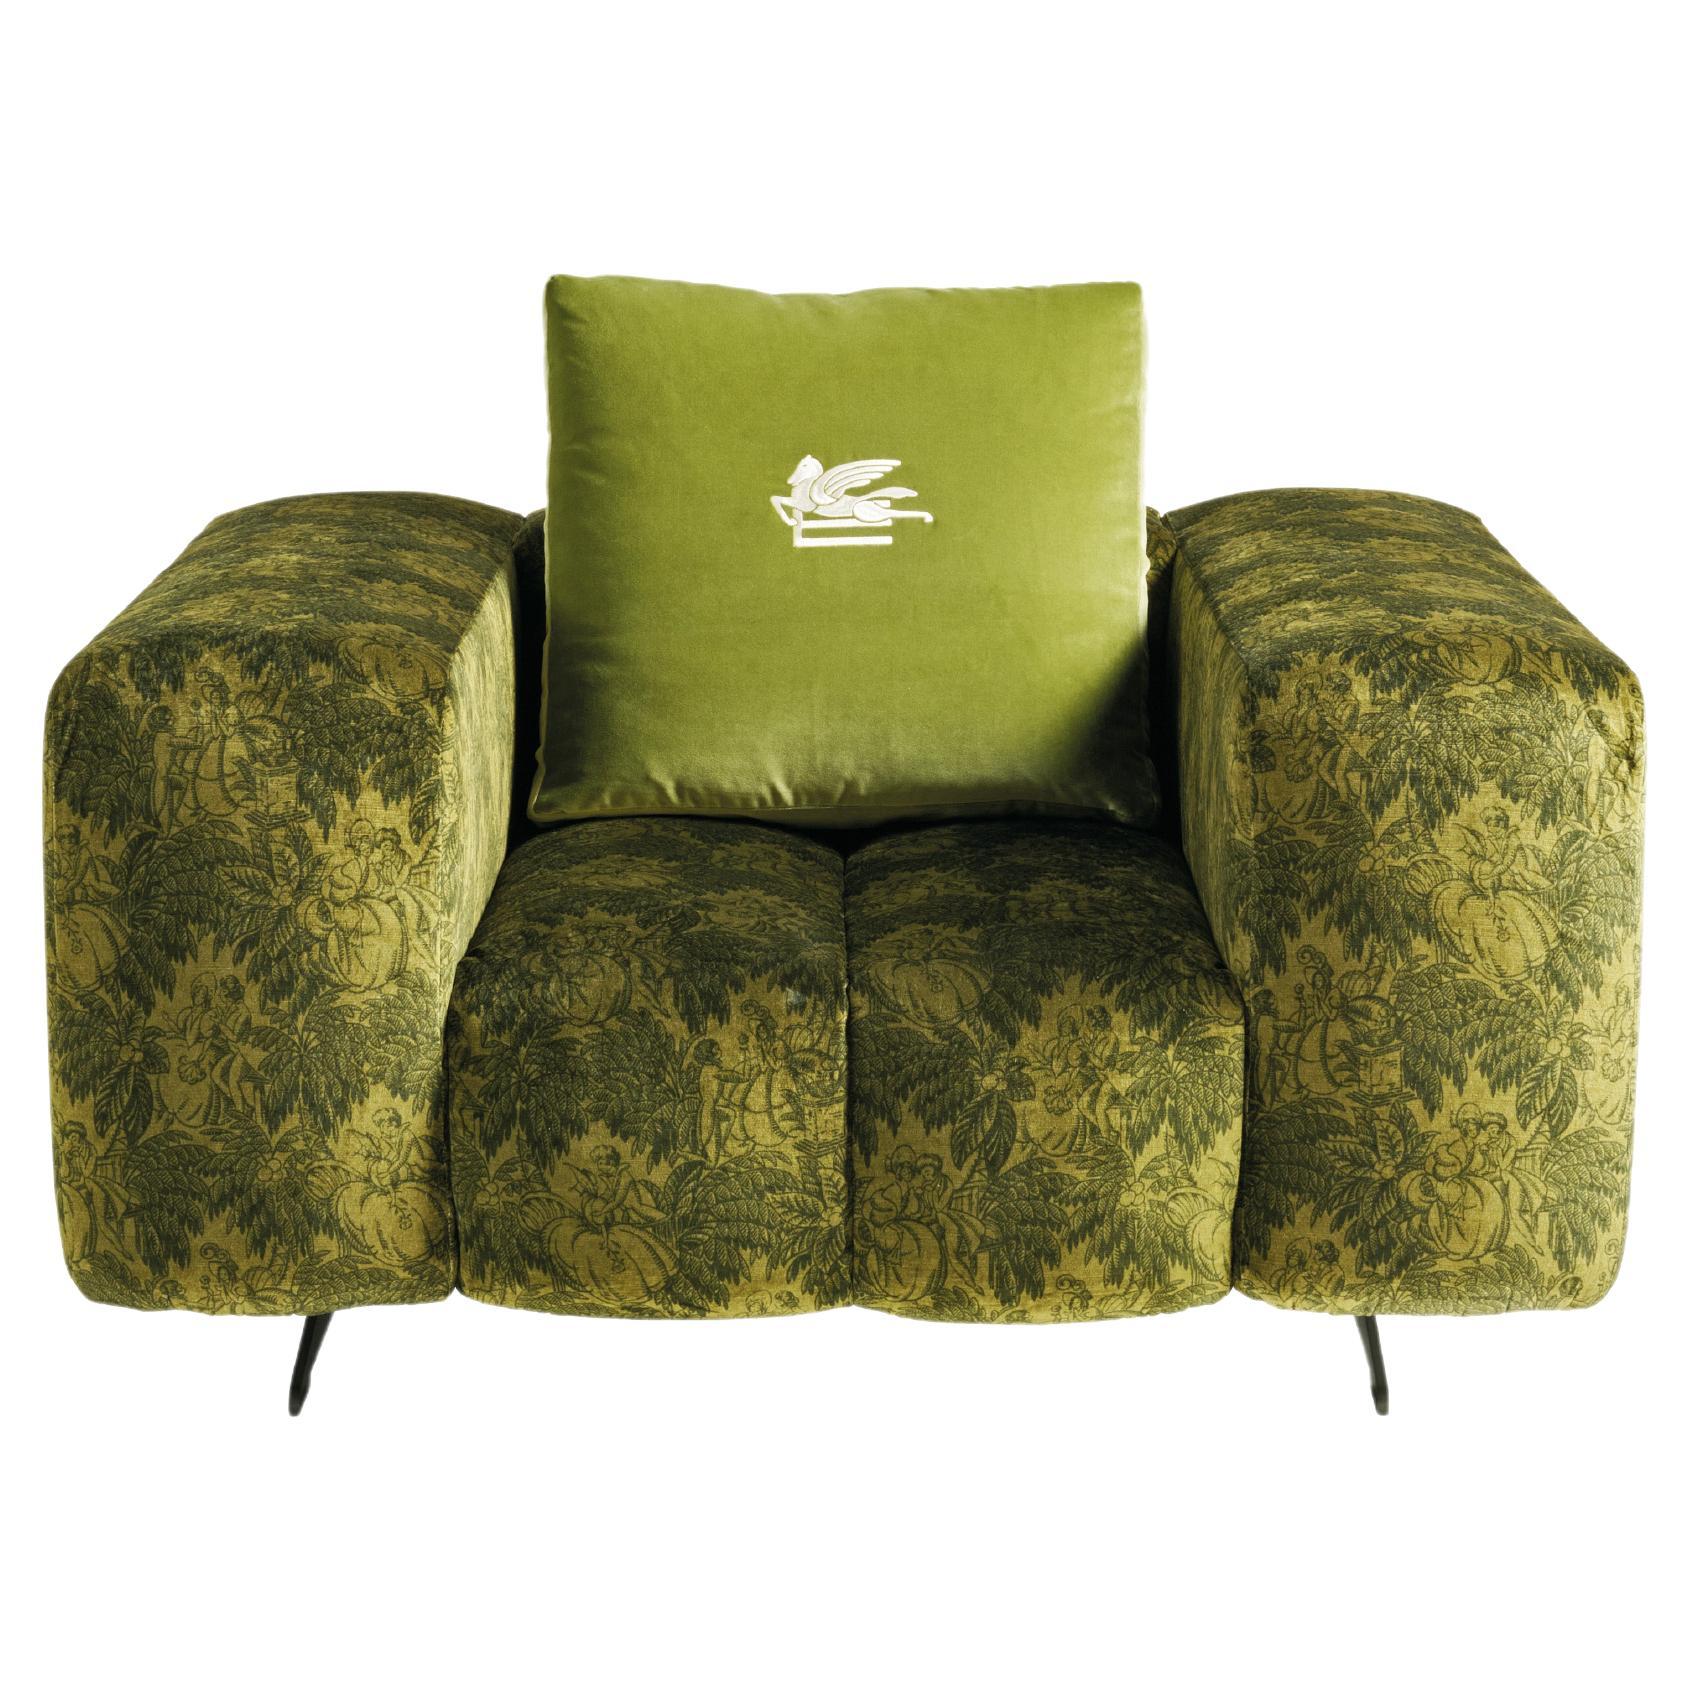 Ratio Up Sessel aus grünem Samt von Etro Home Interiors, 21. Jahrhundert